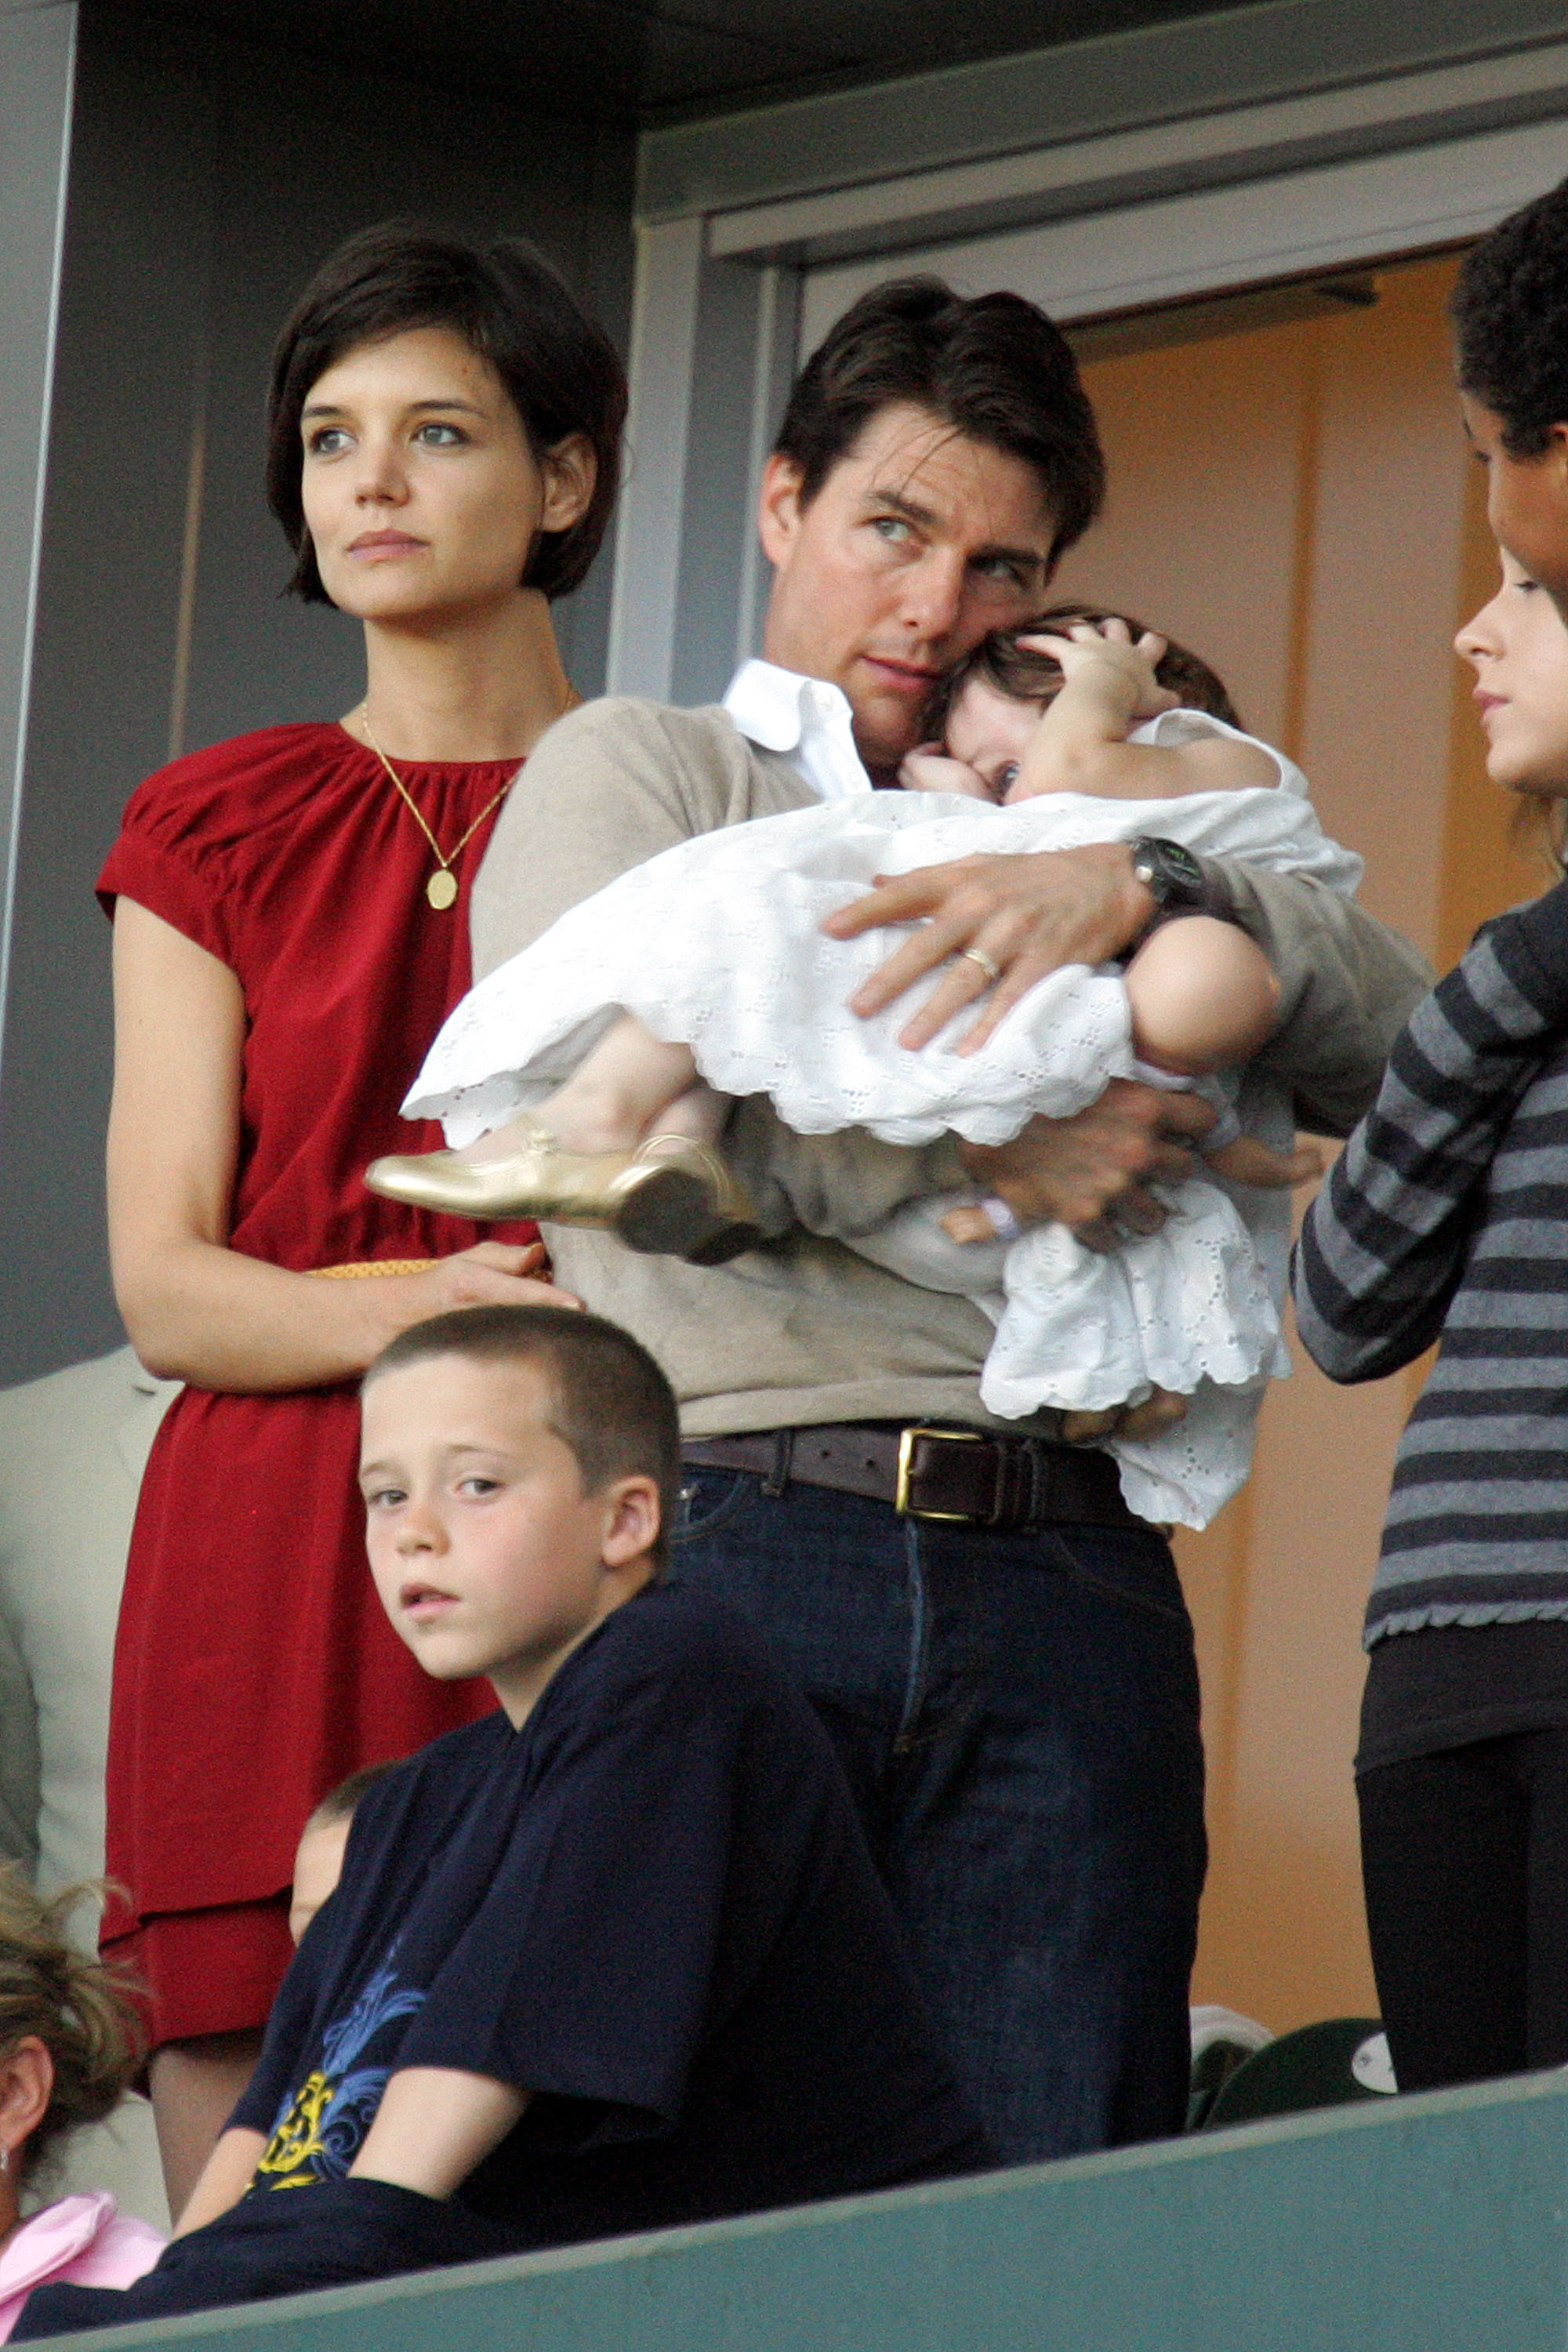 El hijo de David Beckham, Brooklyn Beckham (delante), los actores Tom Cruise y Katie Holmes, con su hija Suri Cruise, ven un partido de la Major League Soccer el 10 de mayo de 2008 en Carson, California | Fuente: Getty Images